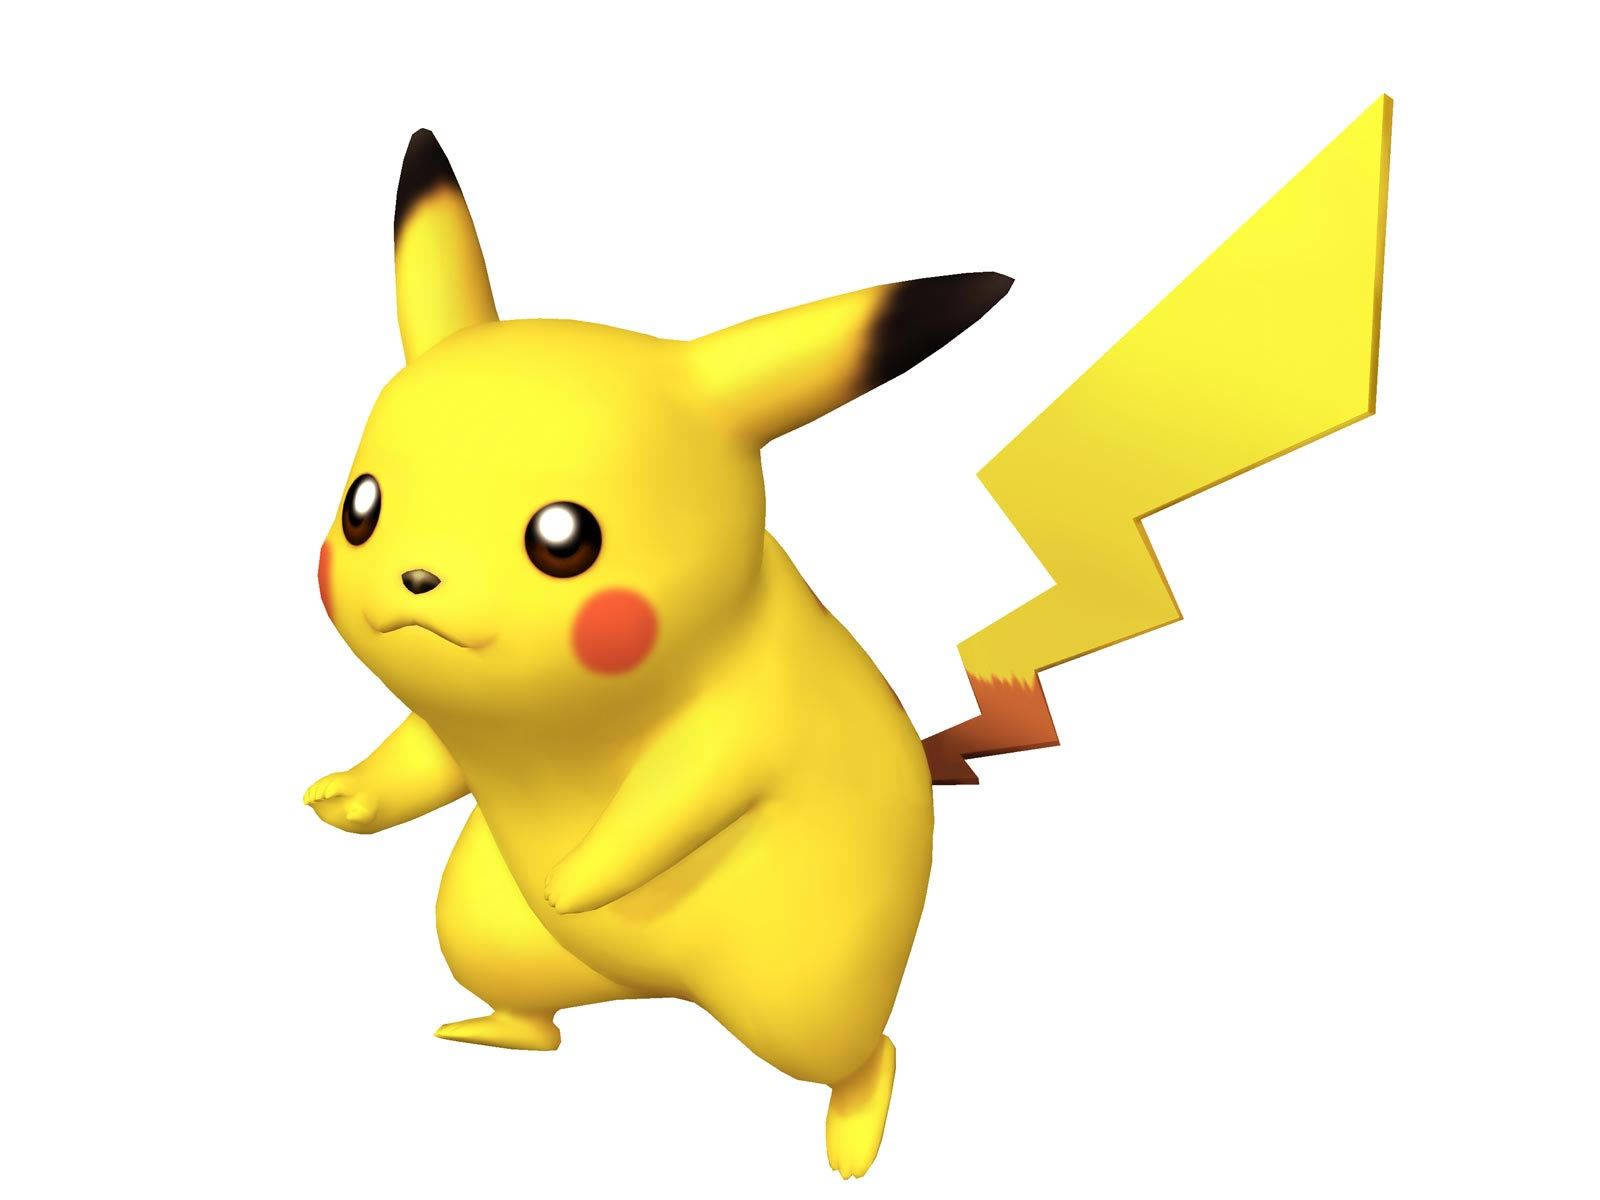 Pikachu 3d Pokémon Game Model Background